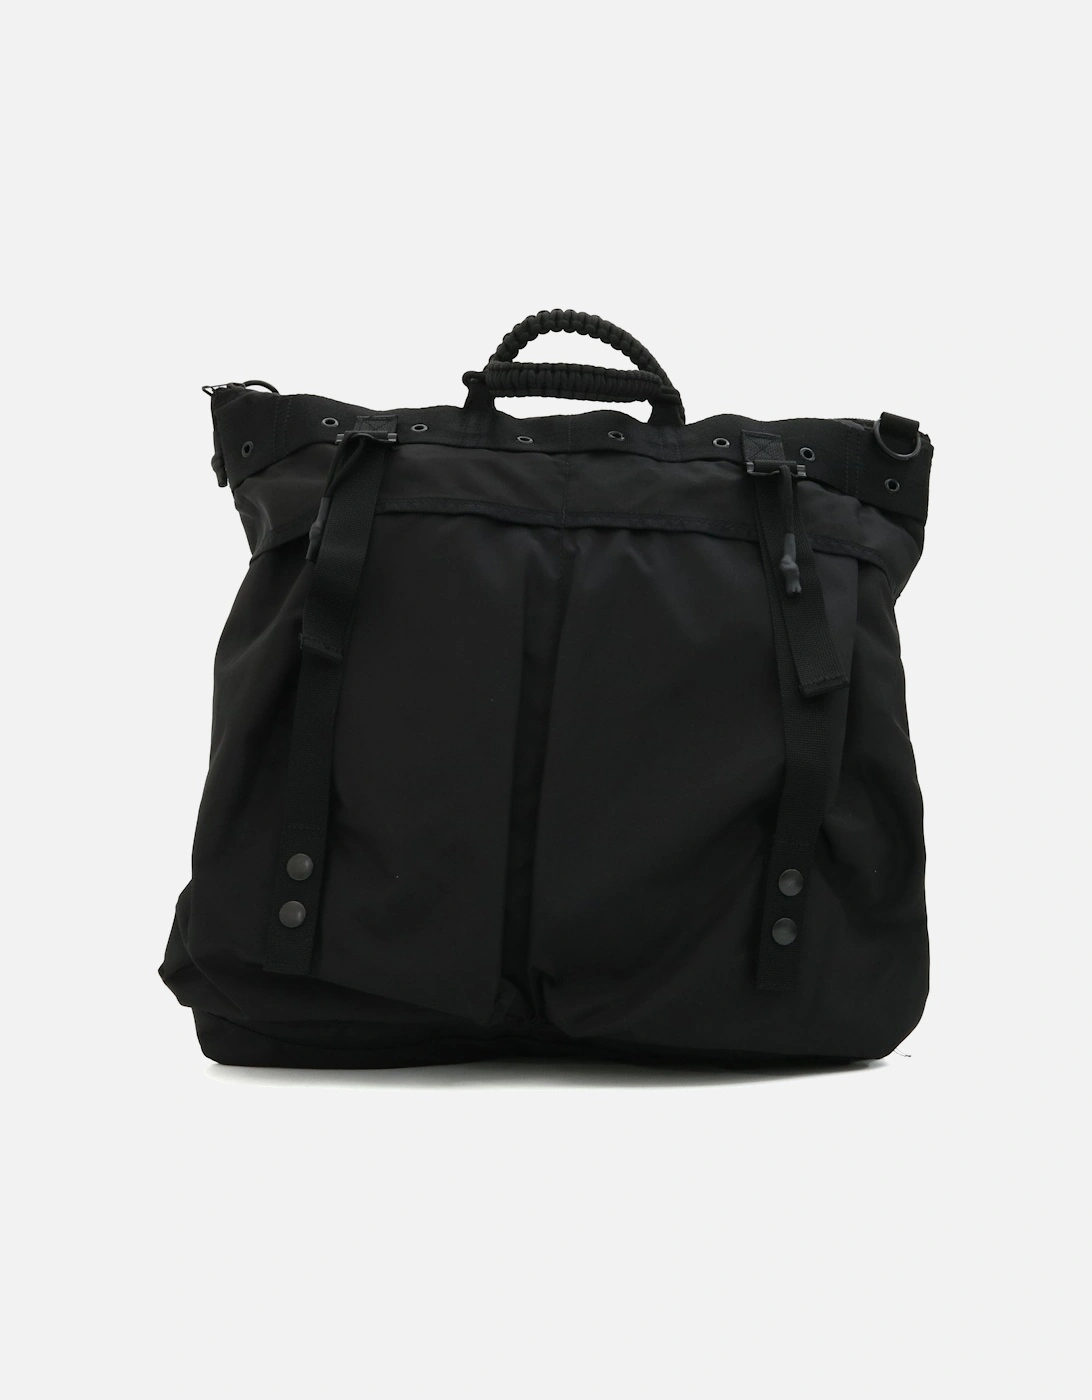 Mallce Day Carry Nylon Black Bag, 6 of 5